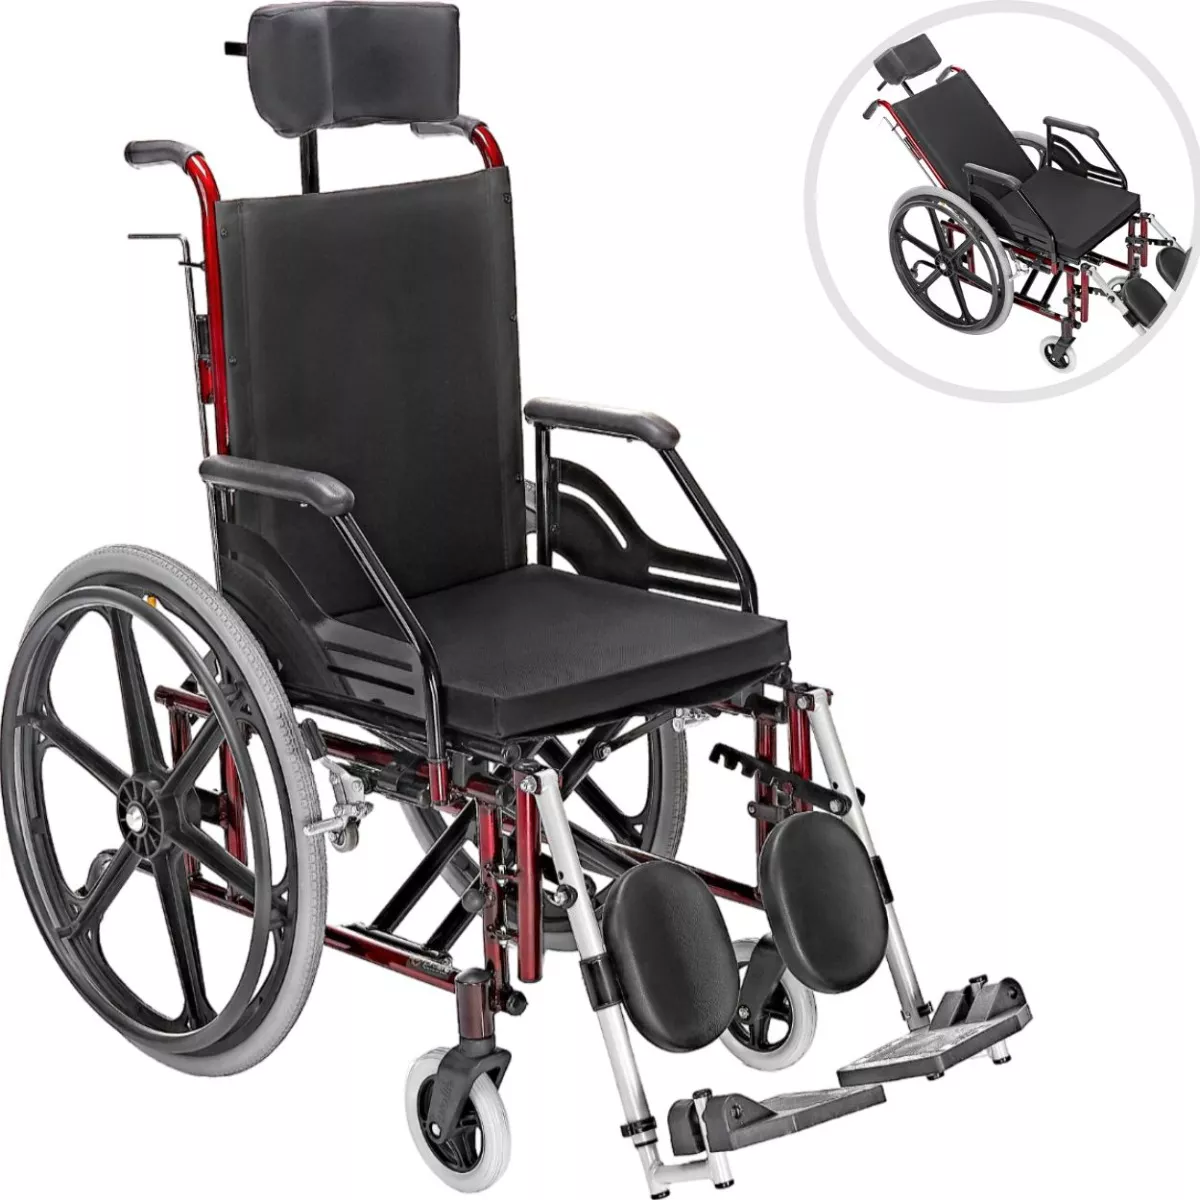 Terceira imagem para pesquisa de cadeira de rodas reclinavel